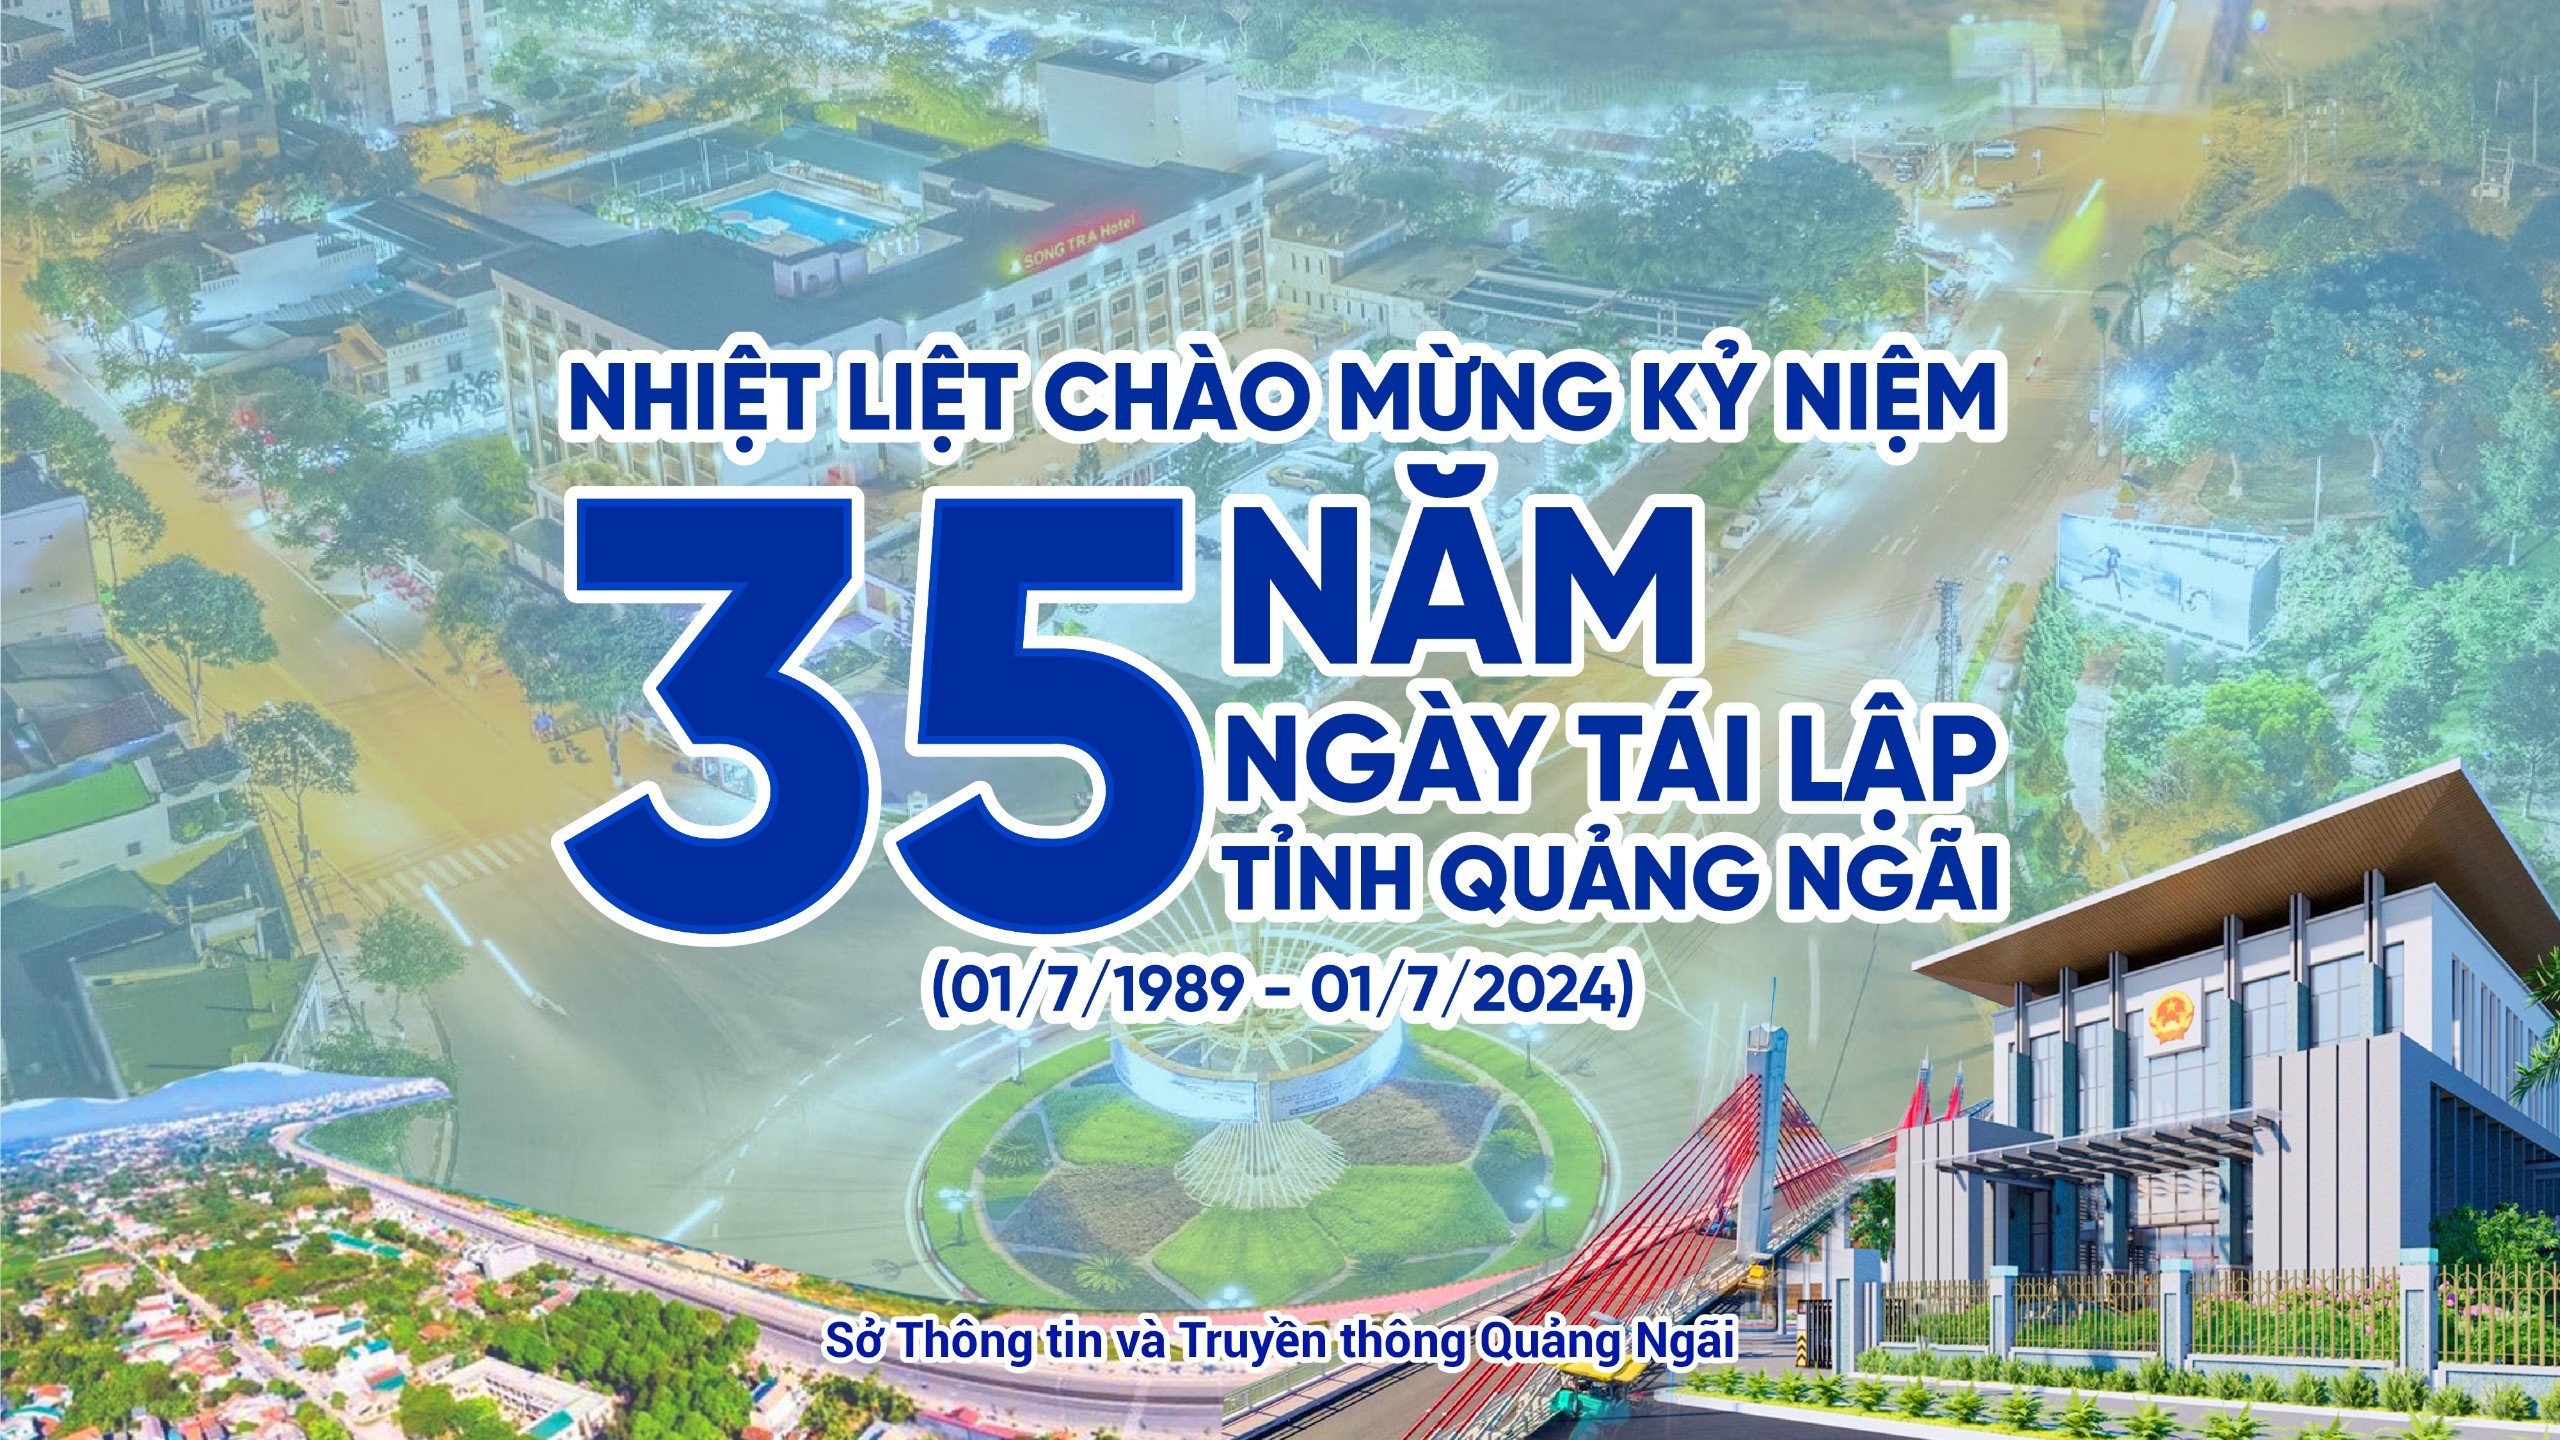 Nhiệt liệt chào mừng Kỷ niệm 35 năm Ngày tái lập tỉnh Quảng Ngãi